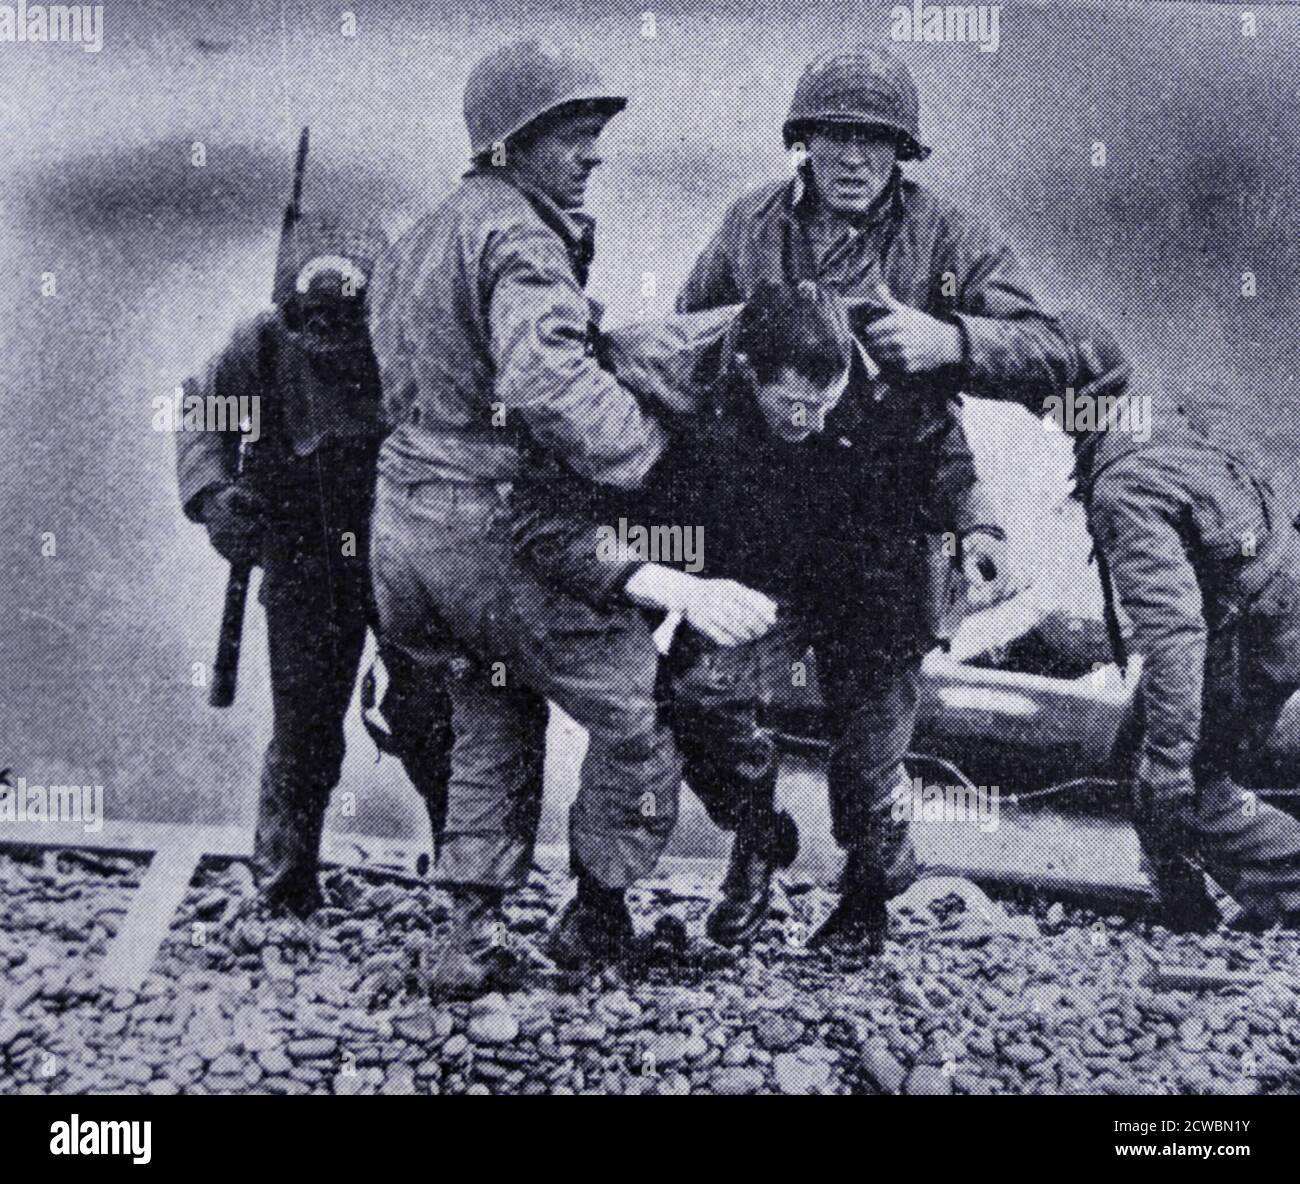 Photographie en noir et blanc de la Seconde Guerre mondiale (1939-1945) montrant des images de l'invasion de la mer par les alliés en Normandie le jour J, 6 juin 1944; les soldats américains aident un de leurs camarades qui a été blessé à l'avance sur la plage. Banque D'Images